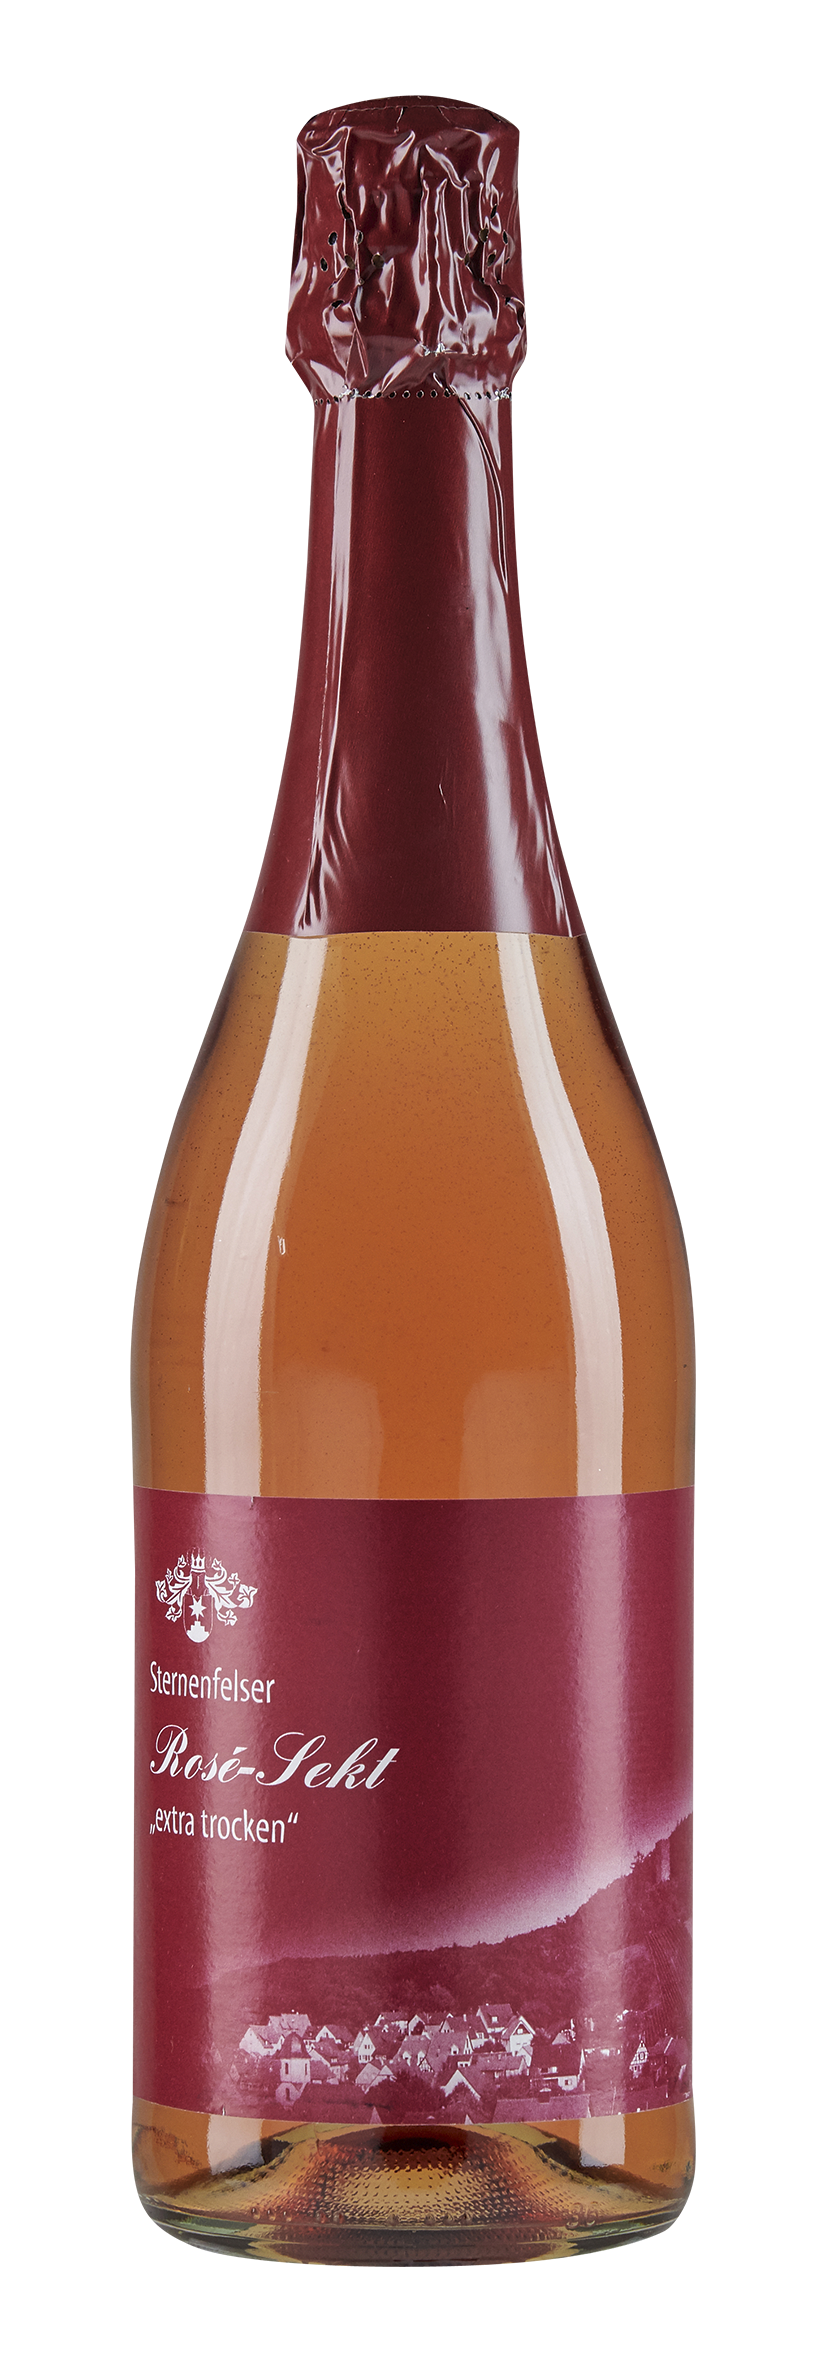 Spätburgunder Rosé Sekt trocken der Weingärtnergenossenschaft Sternenfels, Flaschenansicht